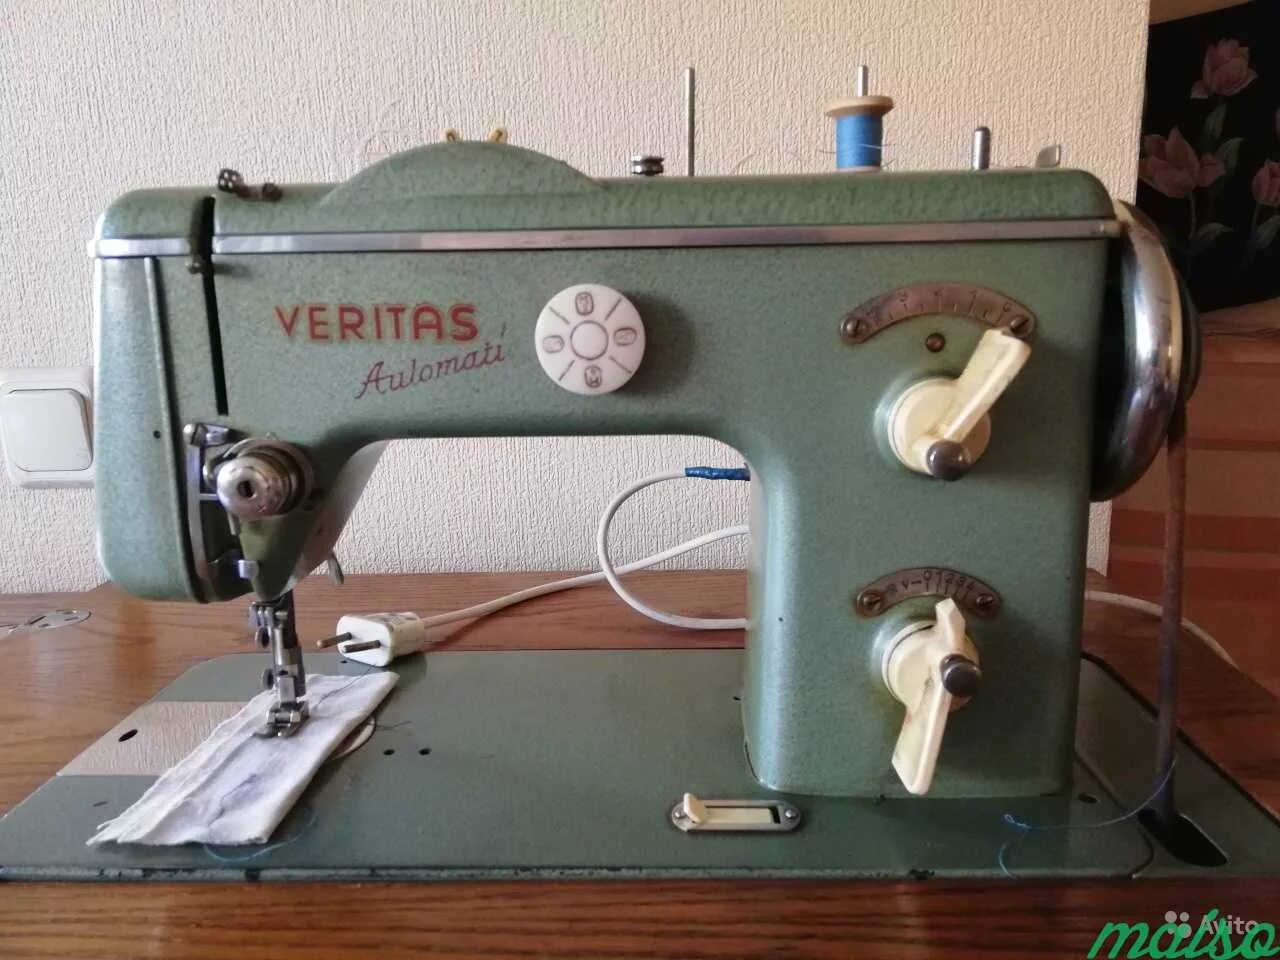 Veritas швейная машина 1970. Швейная машинка veritas 1970 года. Выключатель подсветки швейной машины veritas ГДР купить в Москве. Швейная машинка Веритас 8014043 б/у купить в Москве.